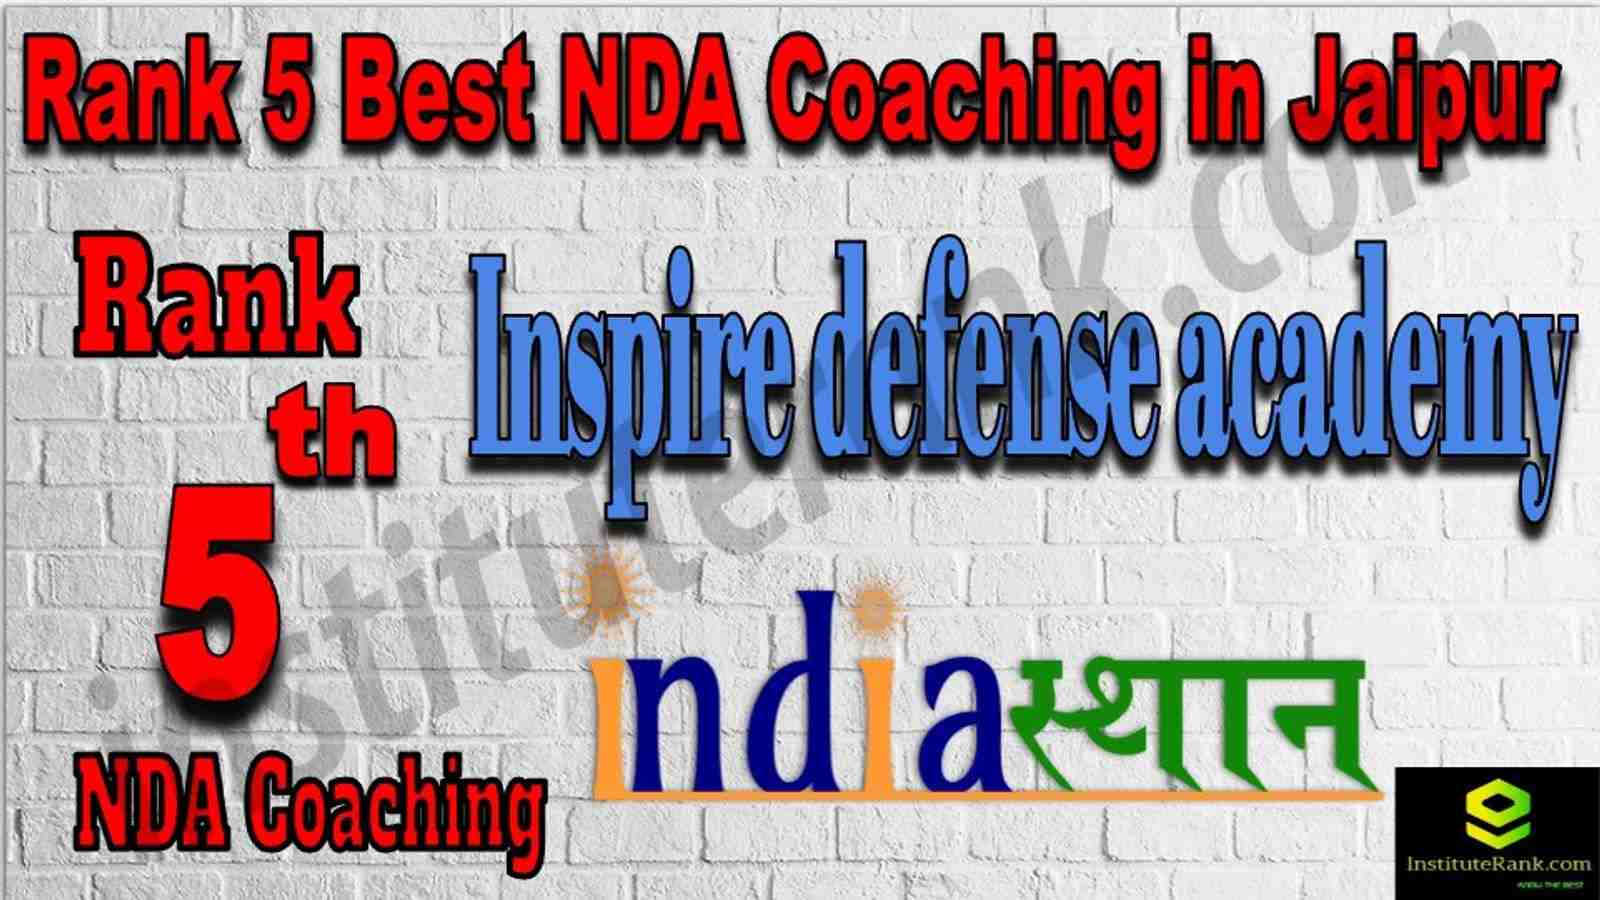 Rank 5. NDA coaching in Jaipur